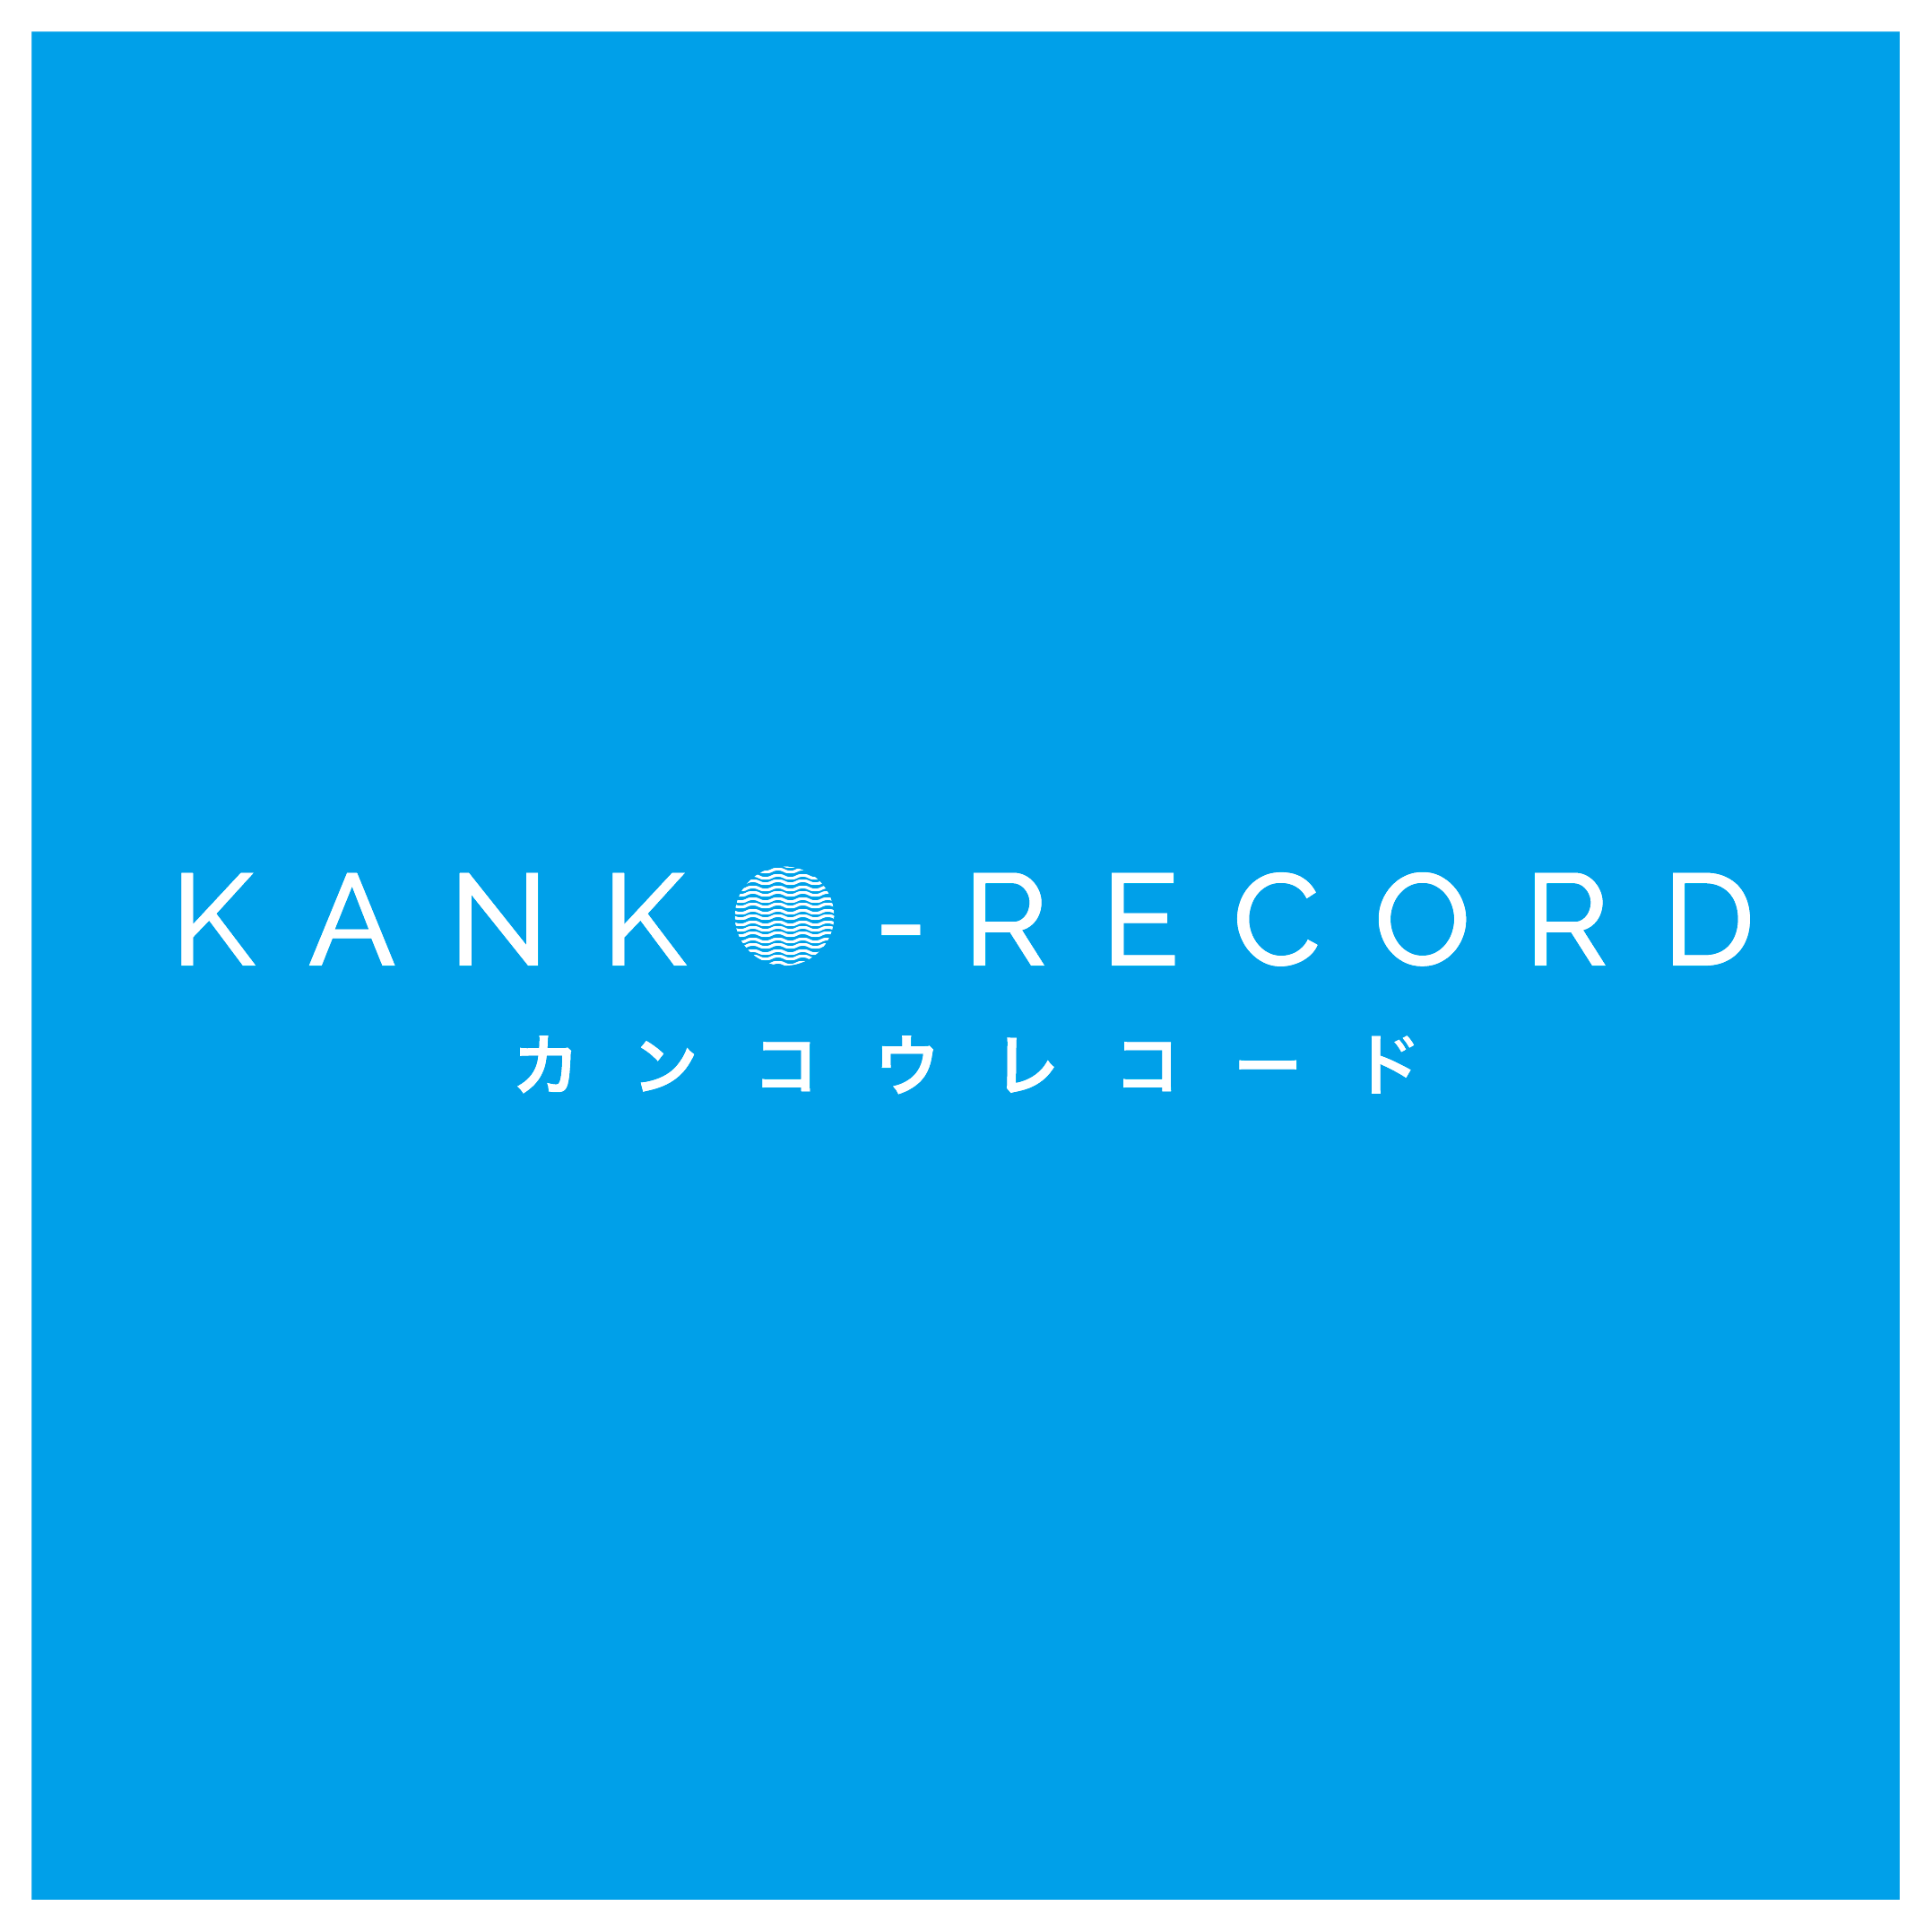 奥田民生 / 股旅 - KANKO RECORD